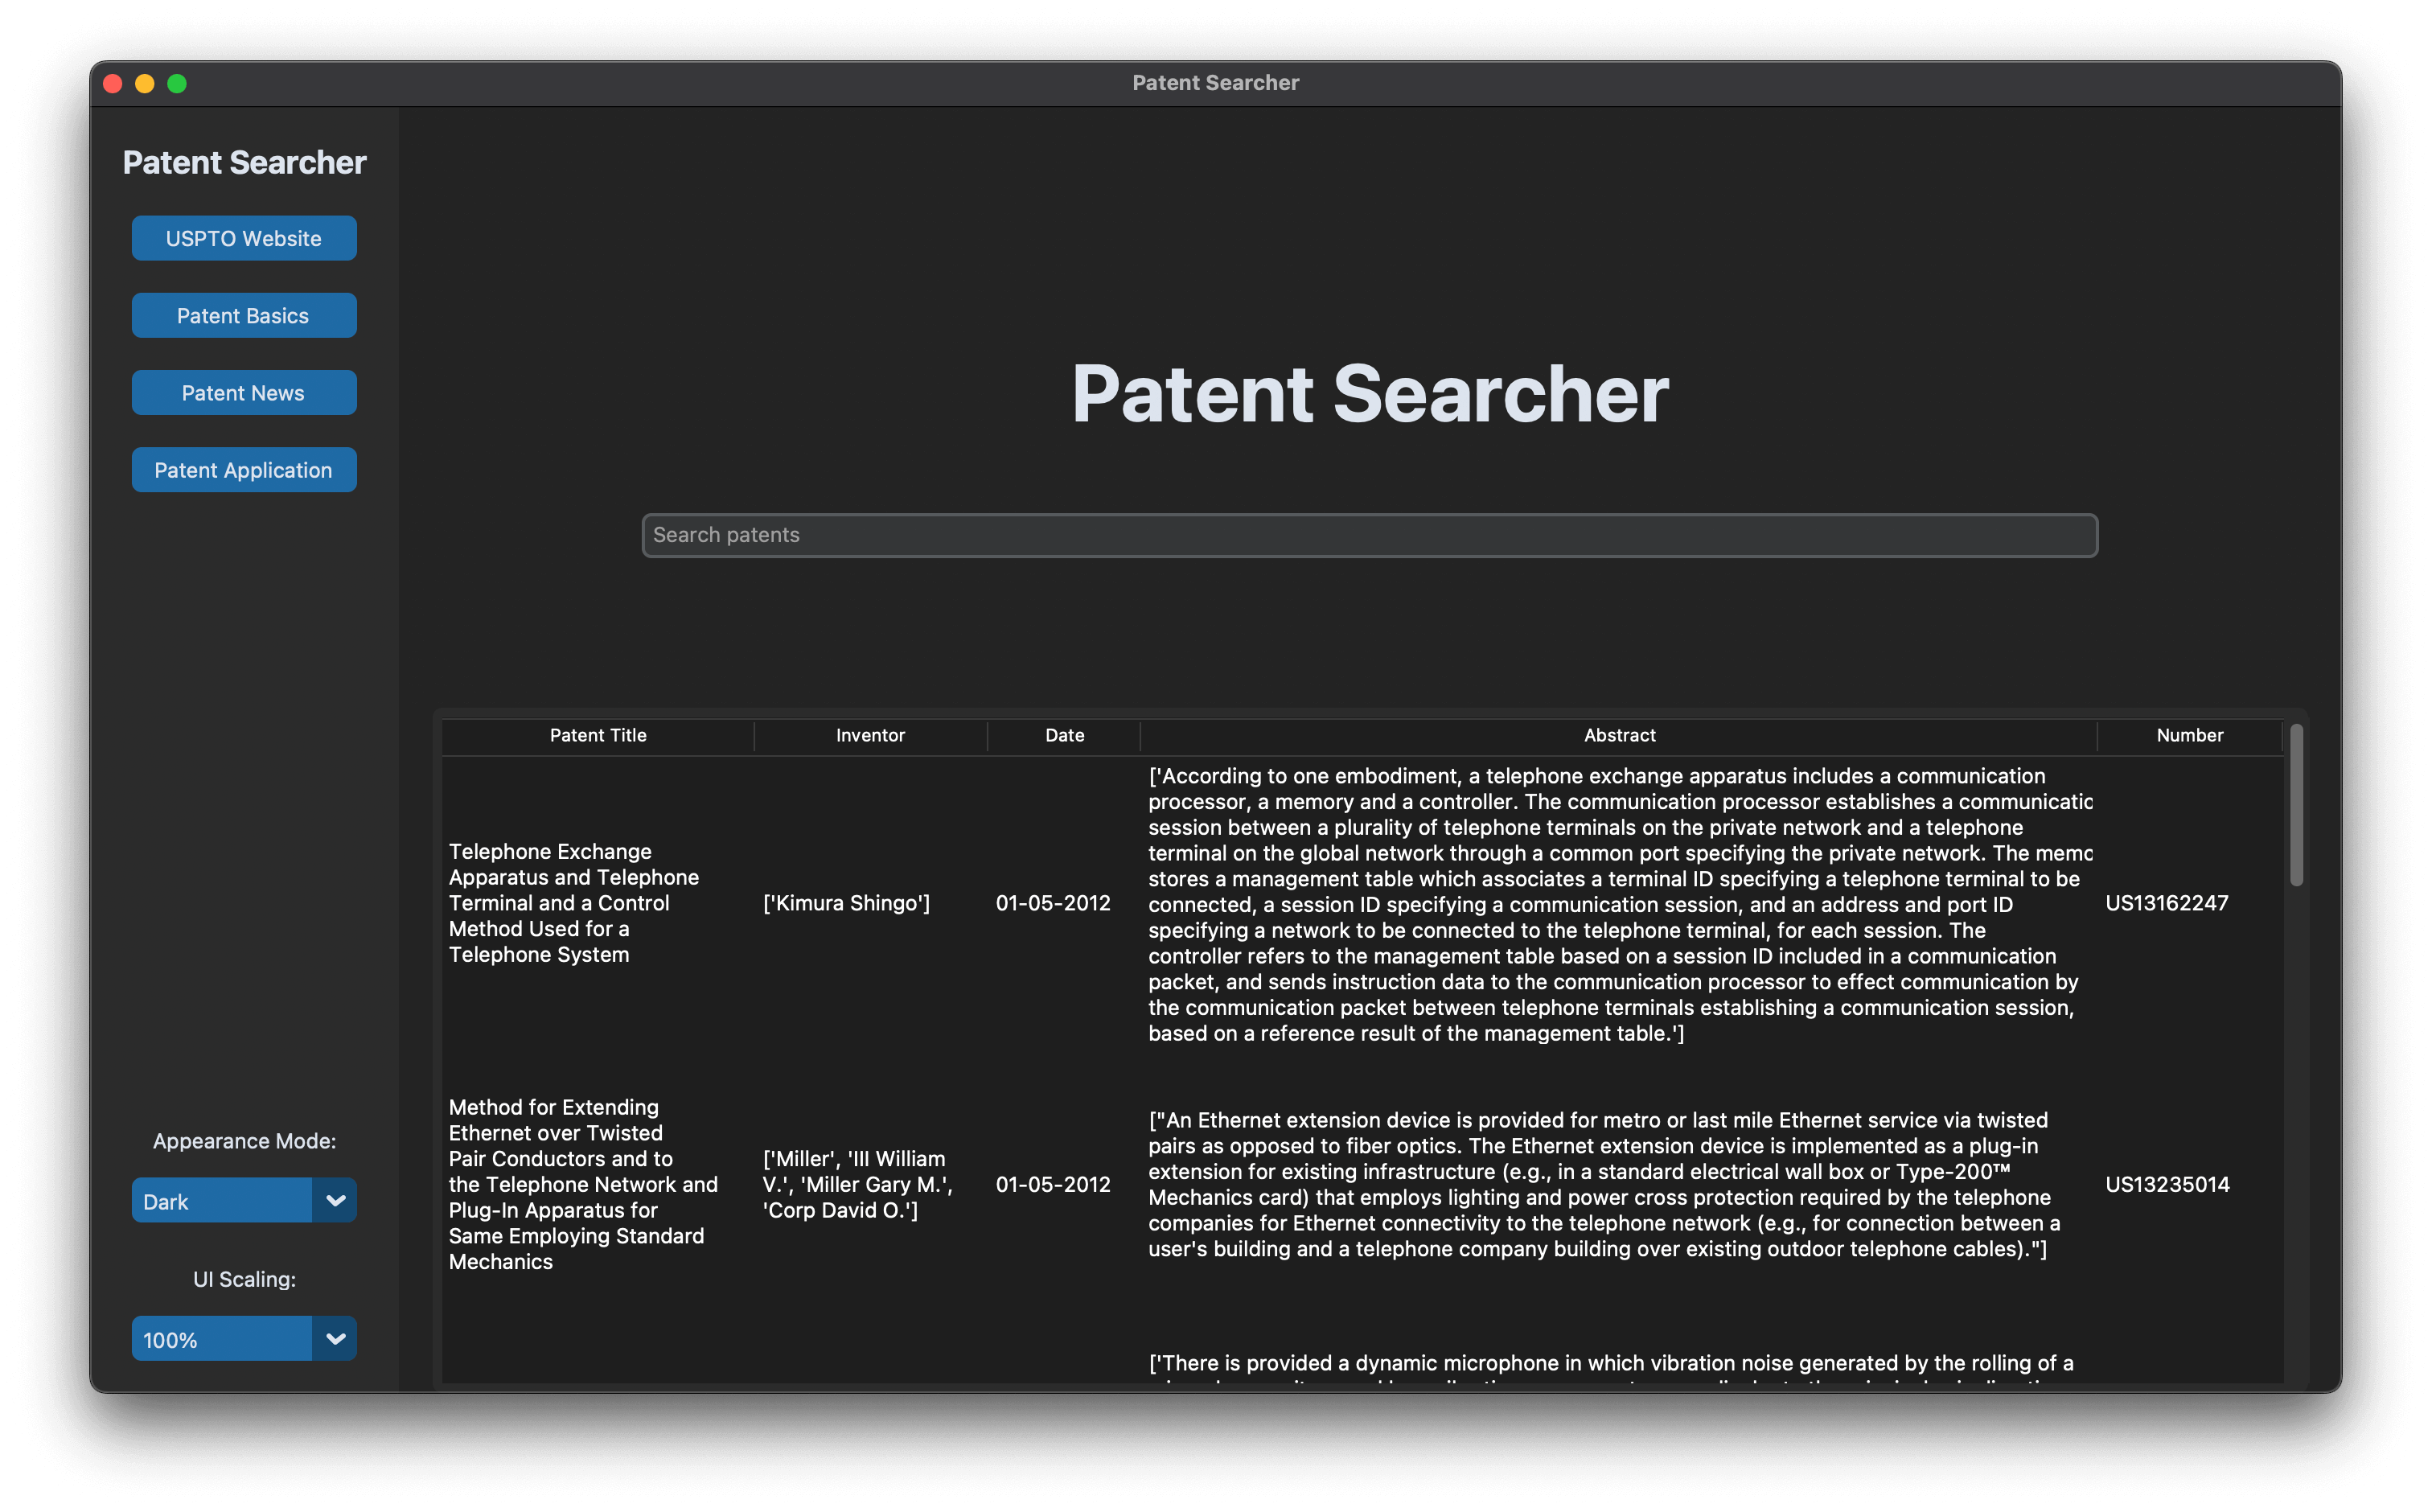 Patent Searcher Image